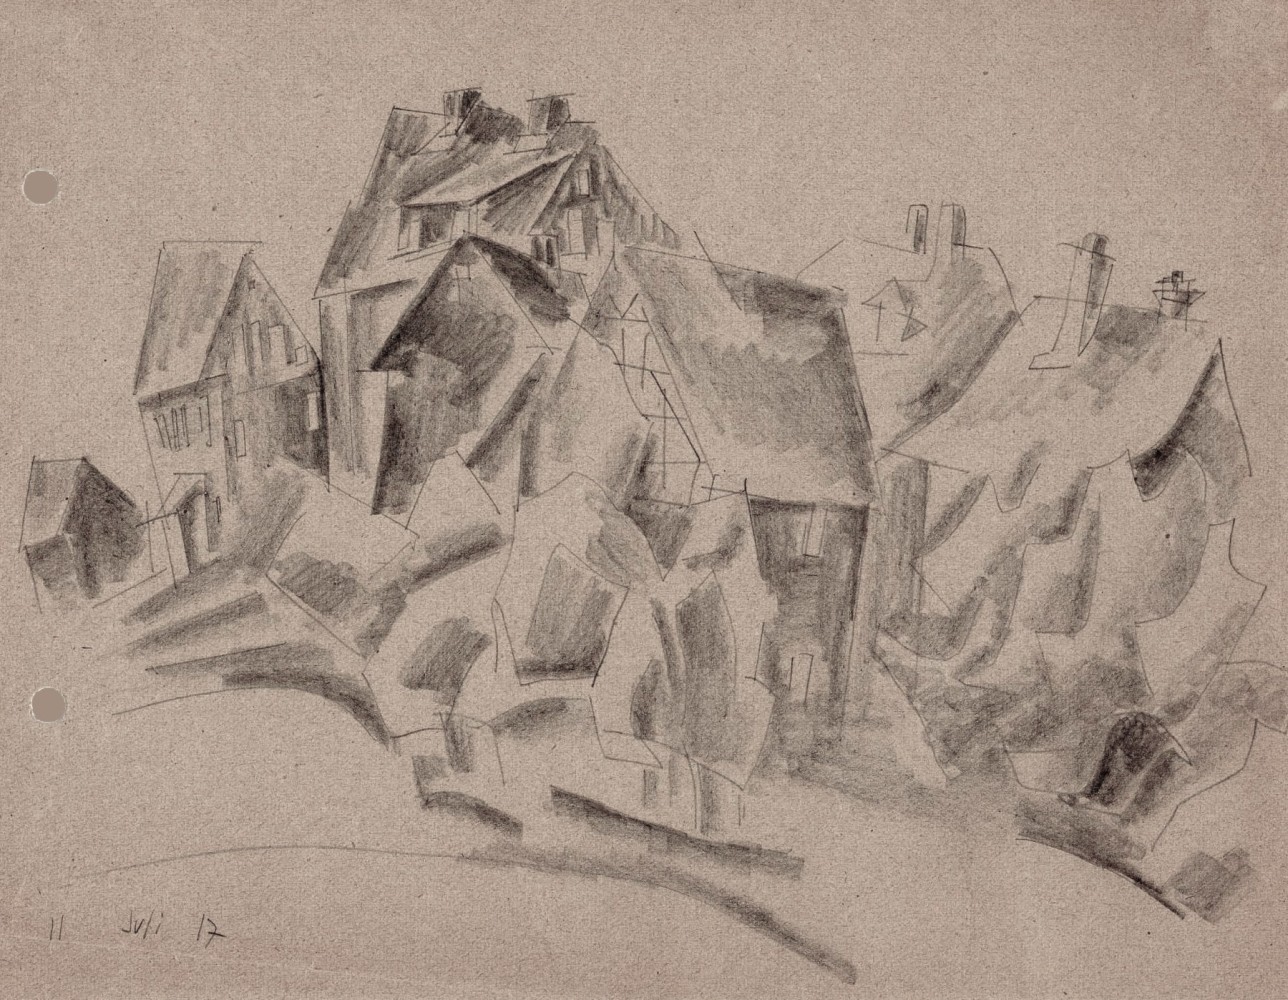 Lyonel Feininger (1871&amp;ndash;1956)
(Village Houses), 1917
Pencil on paper
6 1/4&amp;nbsp;x 8 1/8&amp;nbsp;in. (15.9 x 20.6&amp;nbsp;cm)
Dated lower left:&amp;nbsp;11 Juli 17